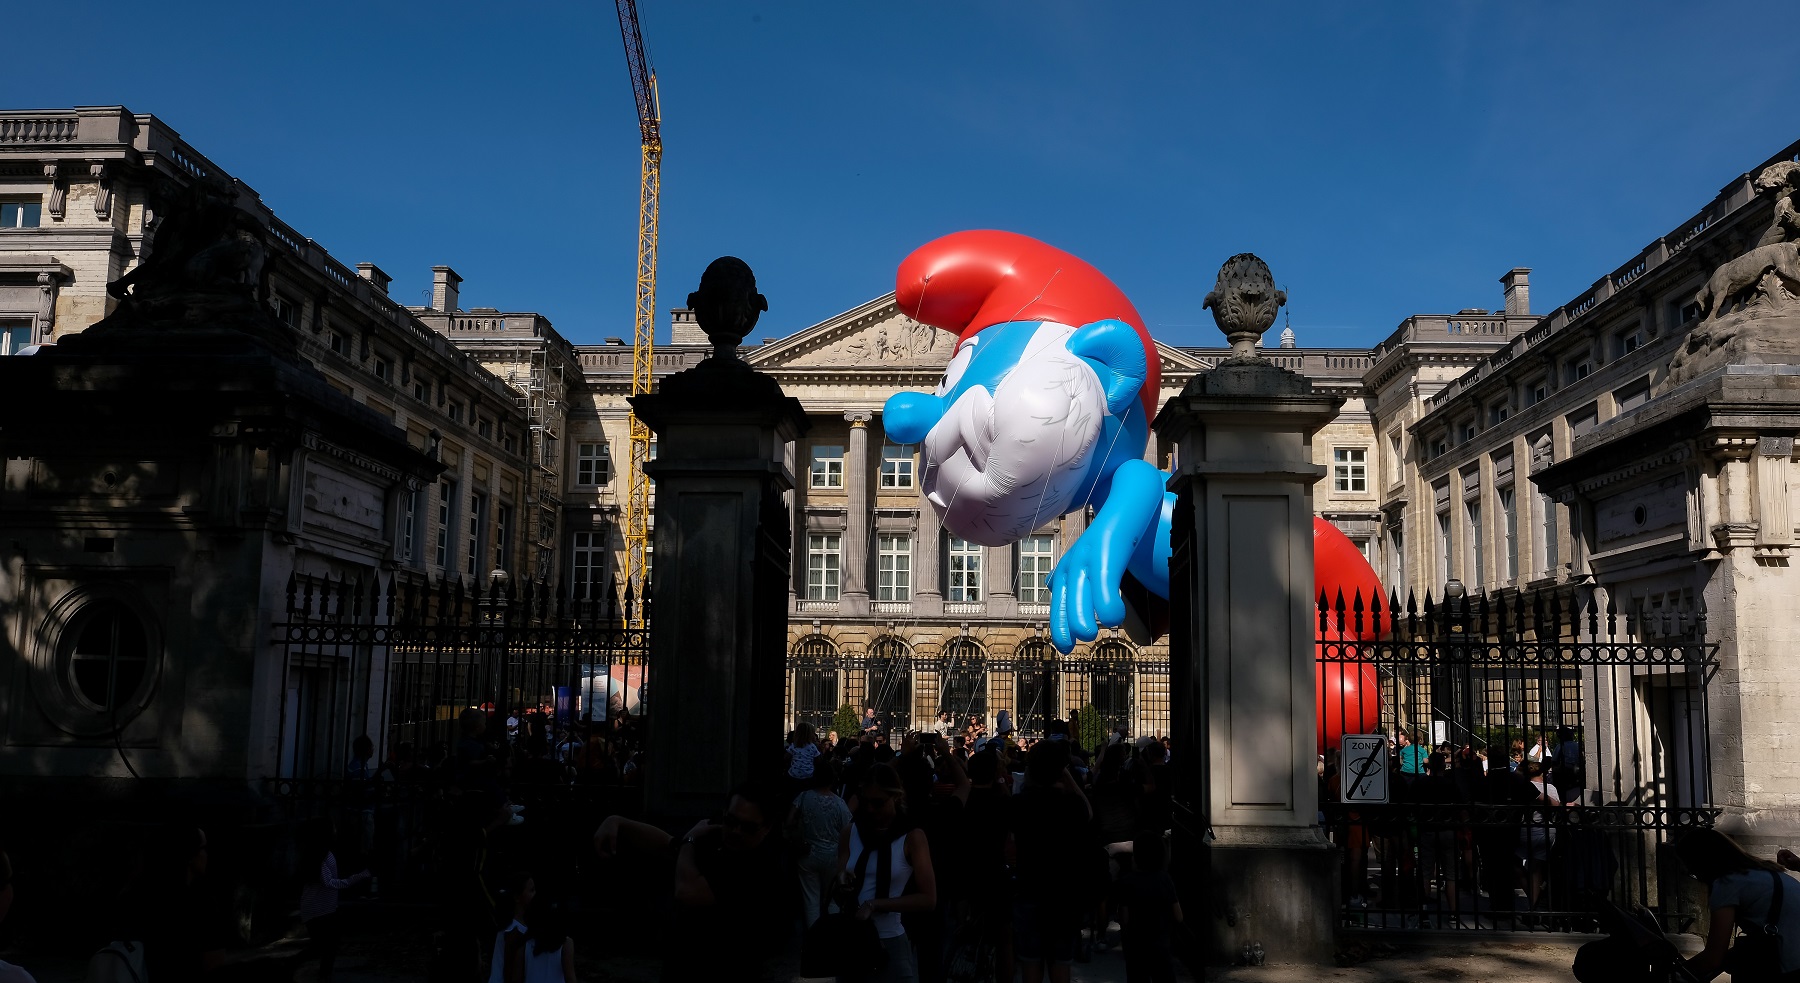 A Smurf balloon from a previous Balloon's Day Parade